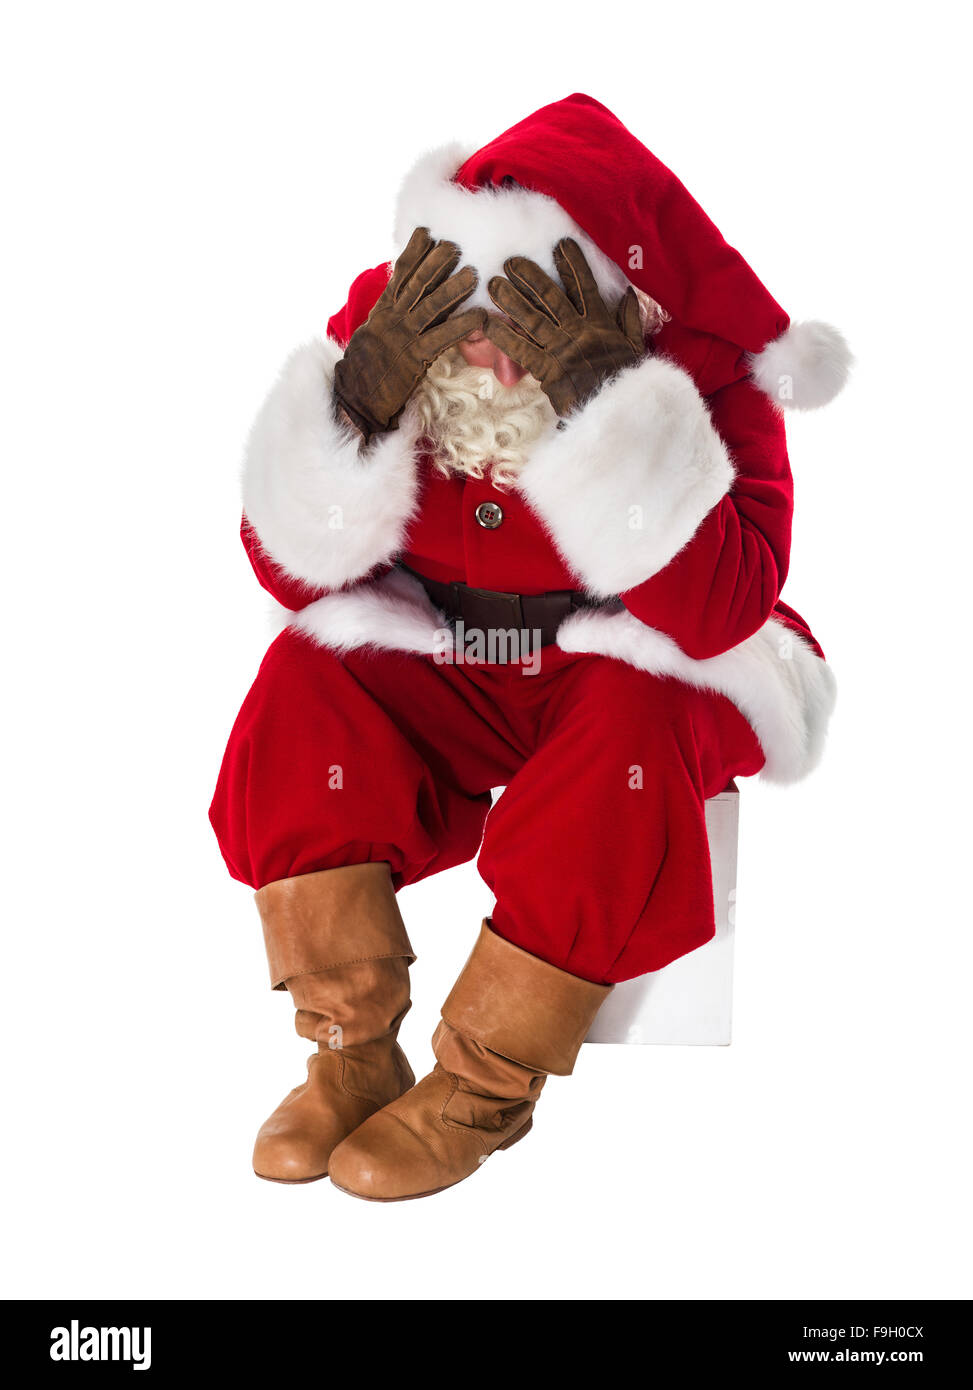 Santa Claus in guai a piena lunghezza verticale. Isolato su sfondo bianco Foto Stock